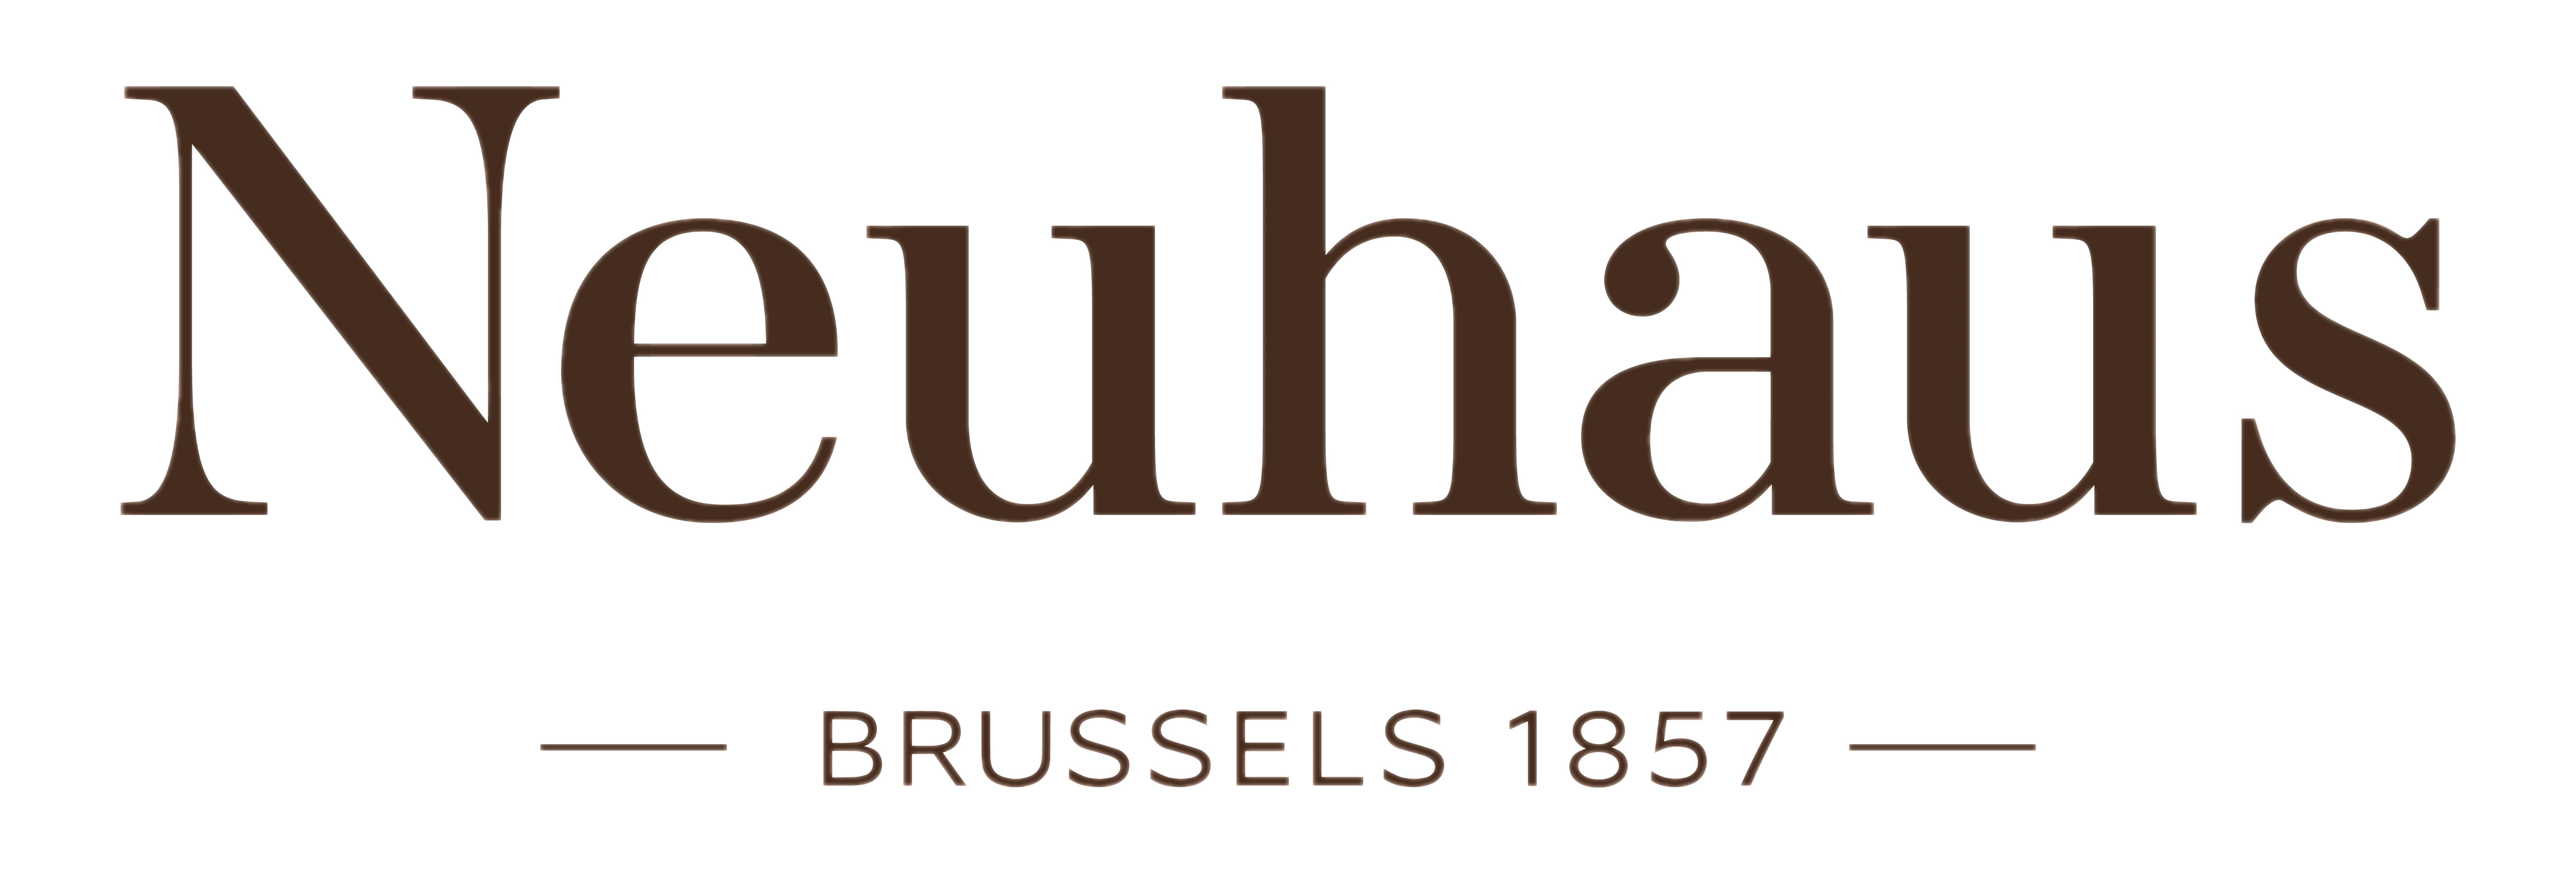 Neuhaus Logo png icons